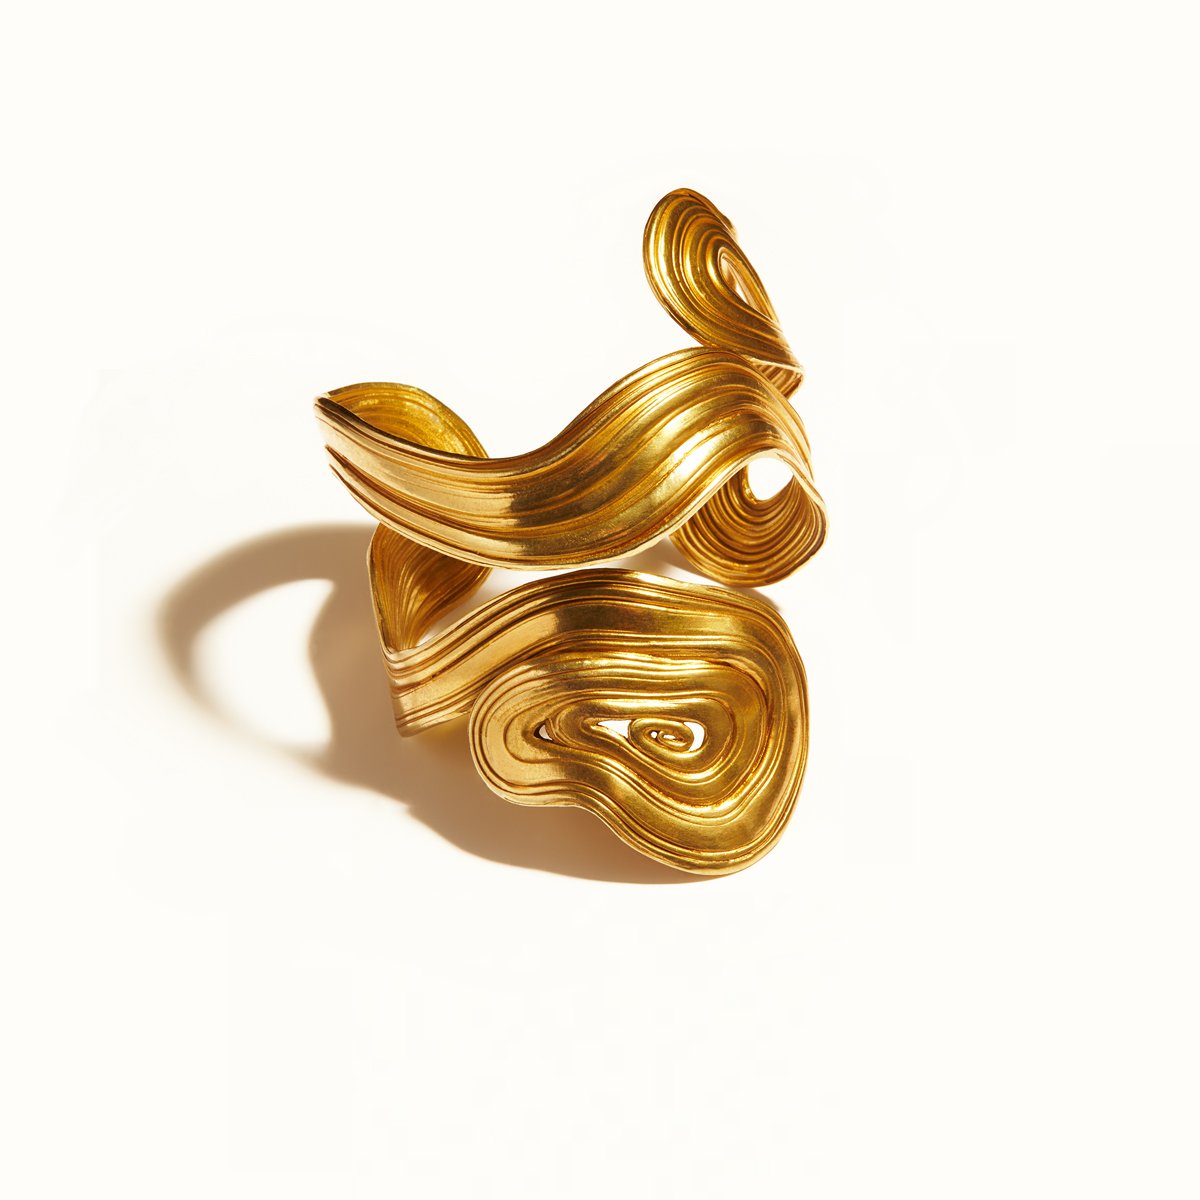 Arje Griegst Jewellery Jewelry Gold Diamonds Denmark Smykker Ring Bracelet spiral